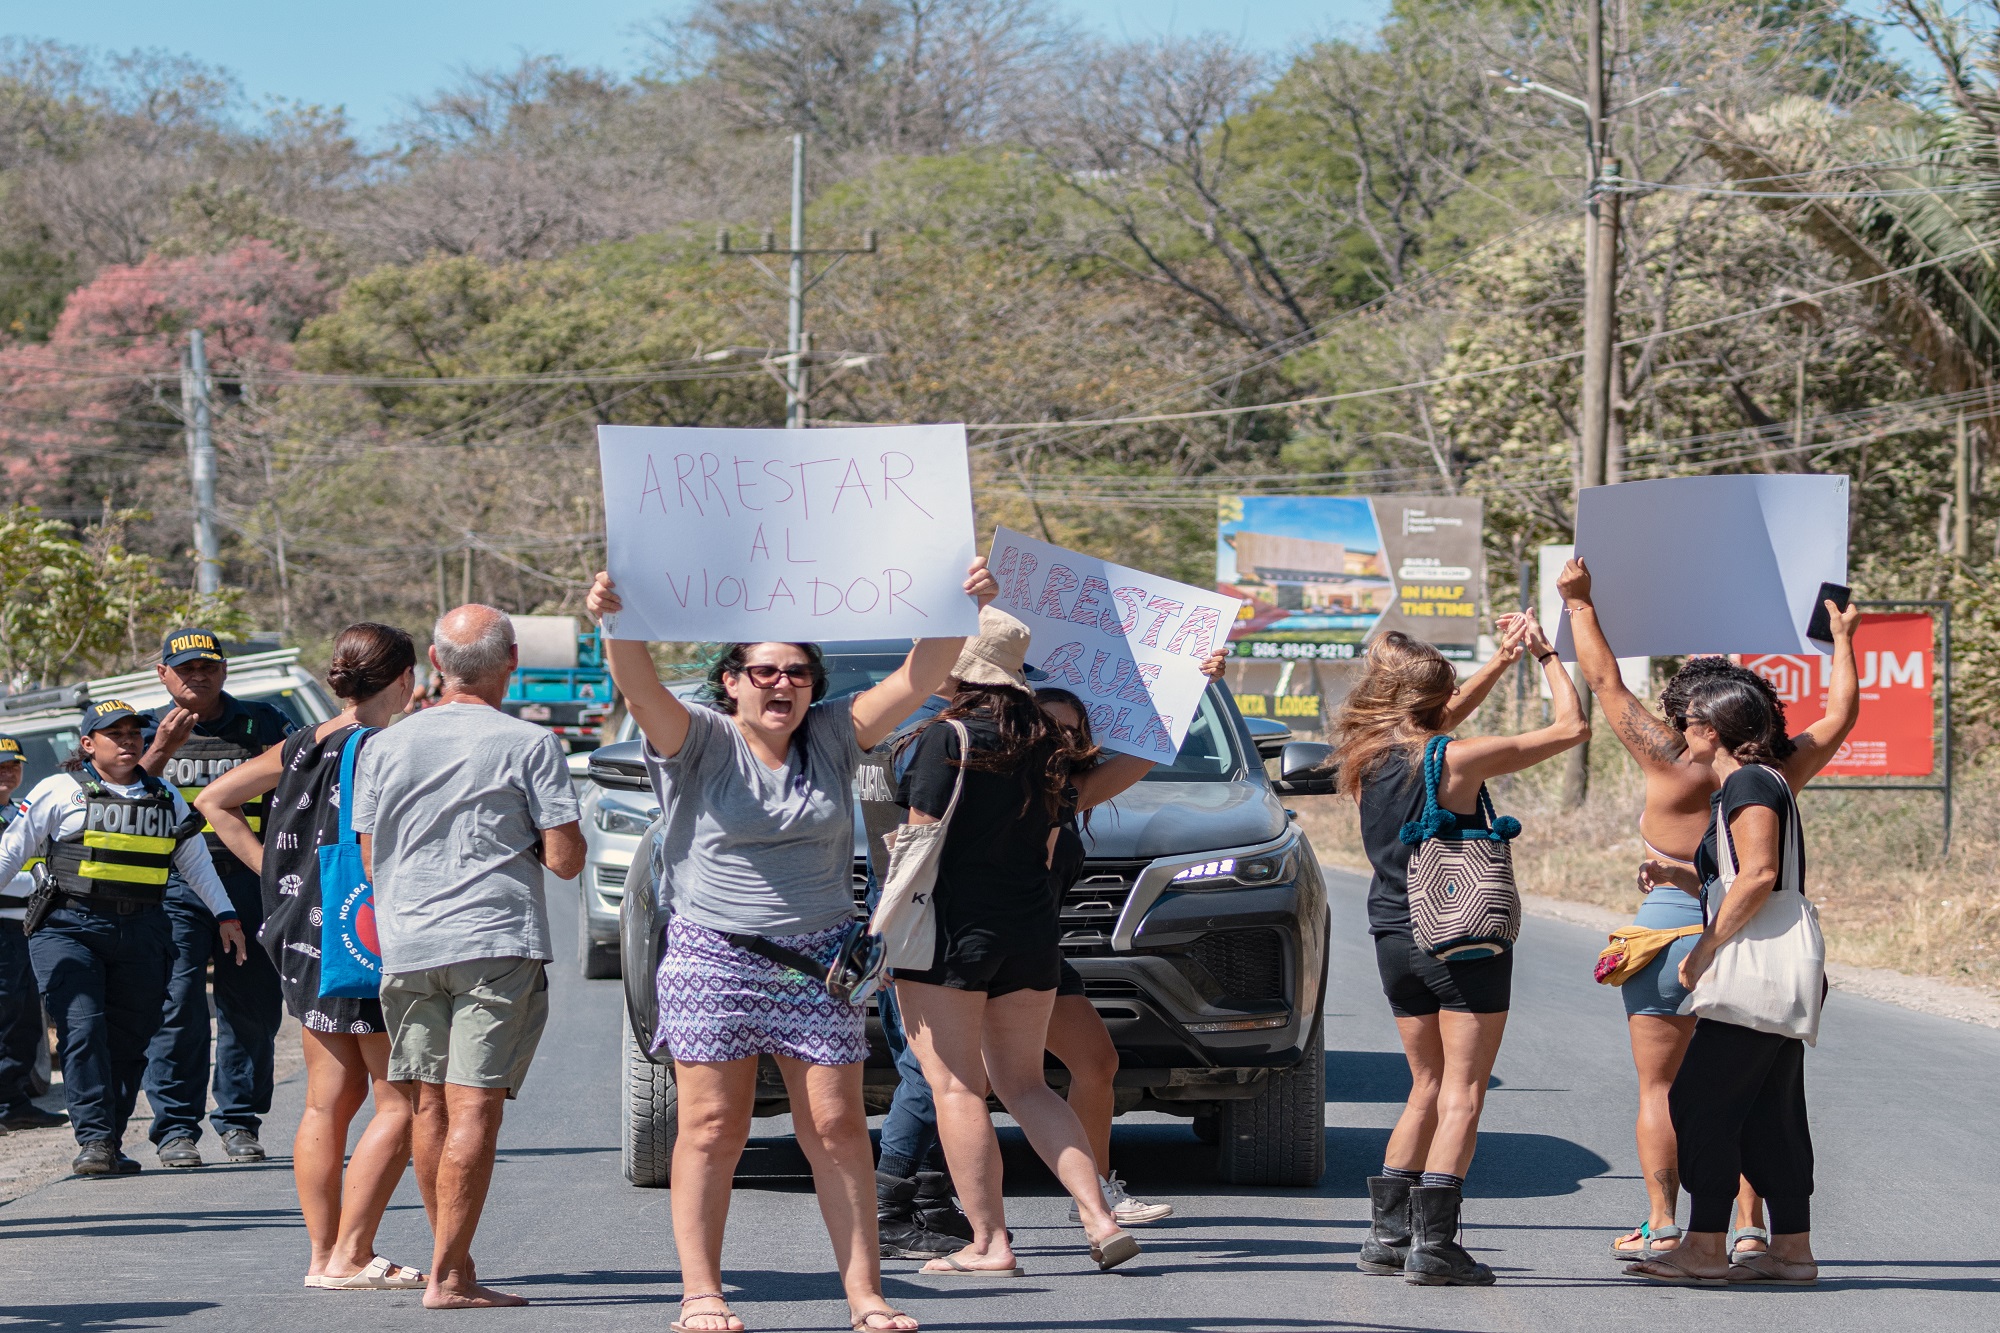 Las mujeres que pasaban en carro cerca de la manifestación alentaban a las participantes con gritos y saludos.